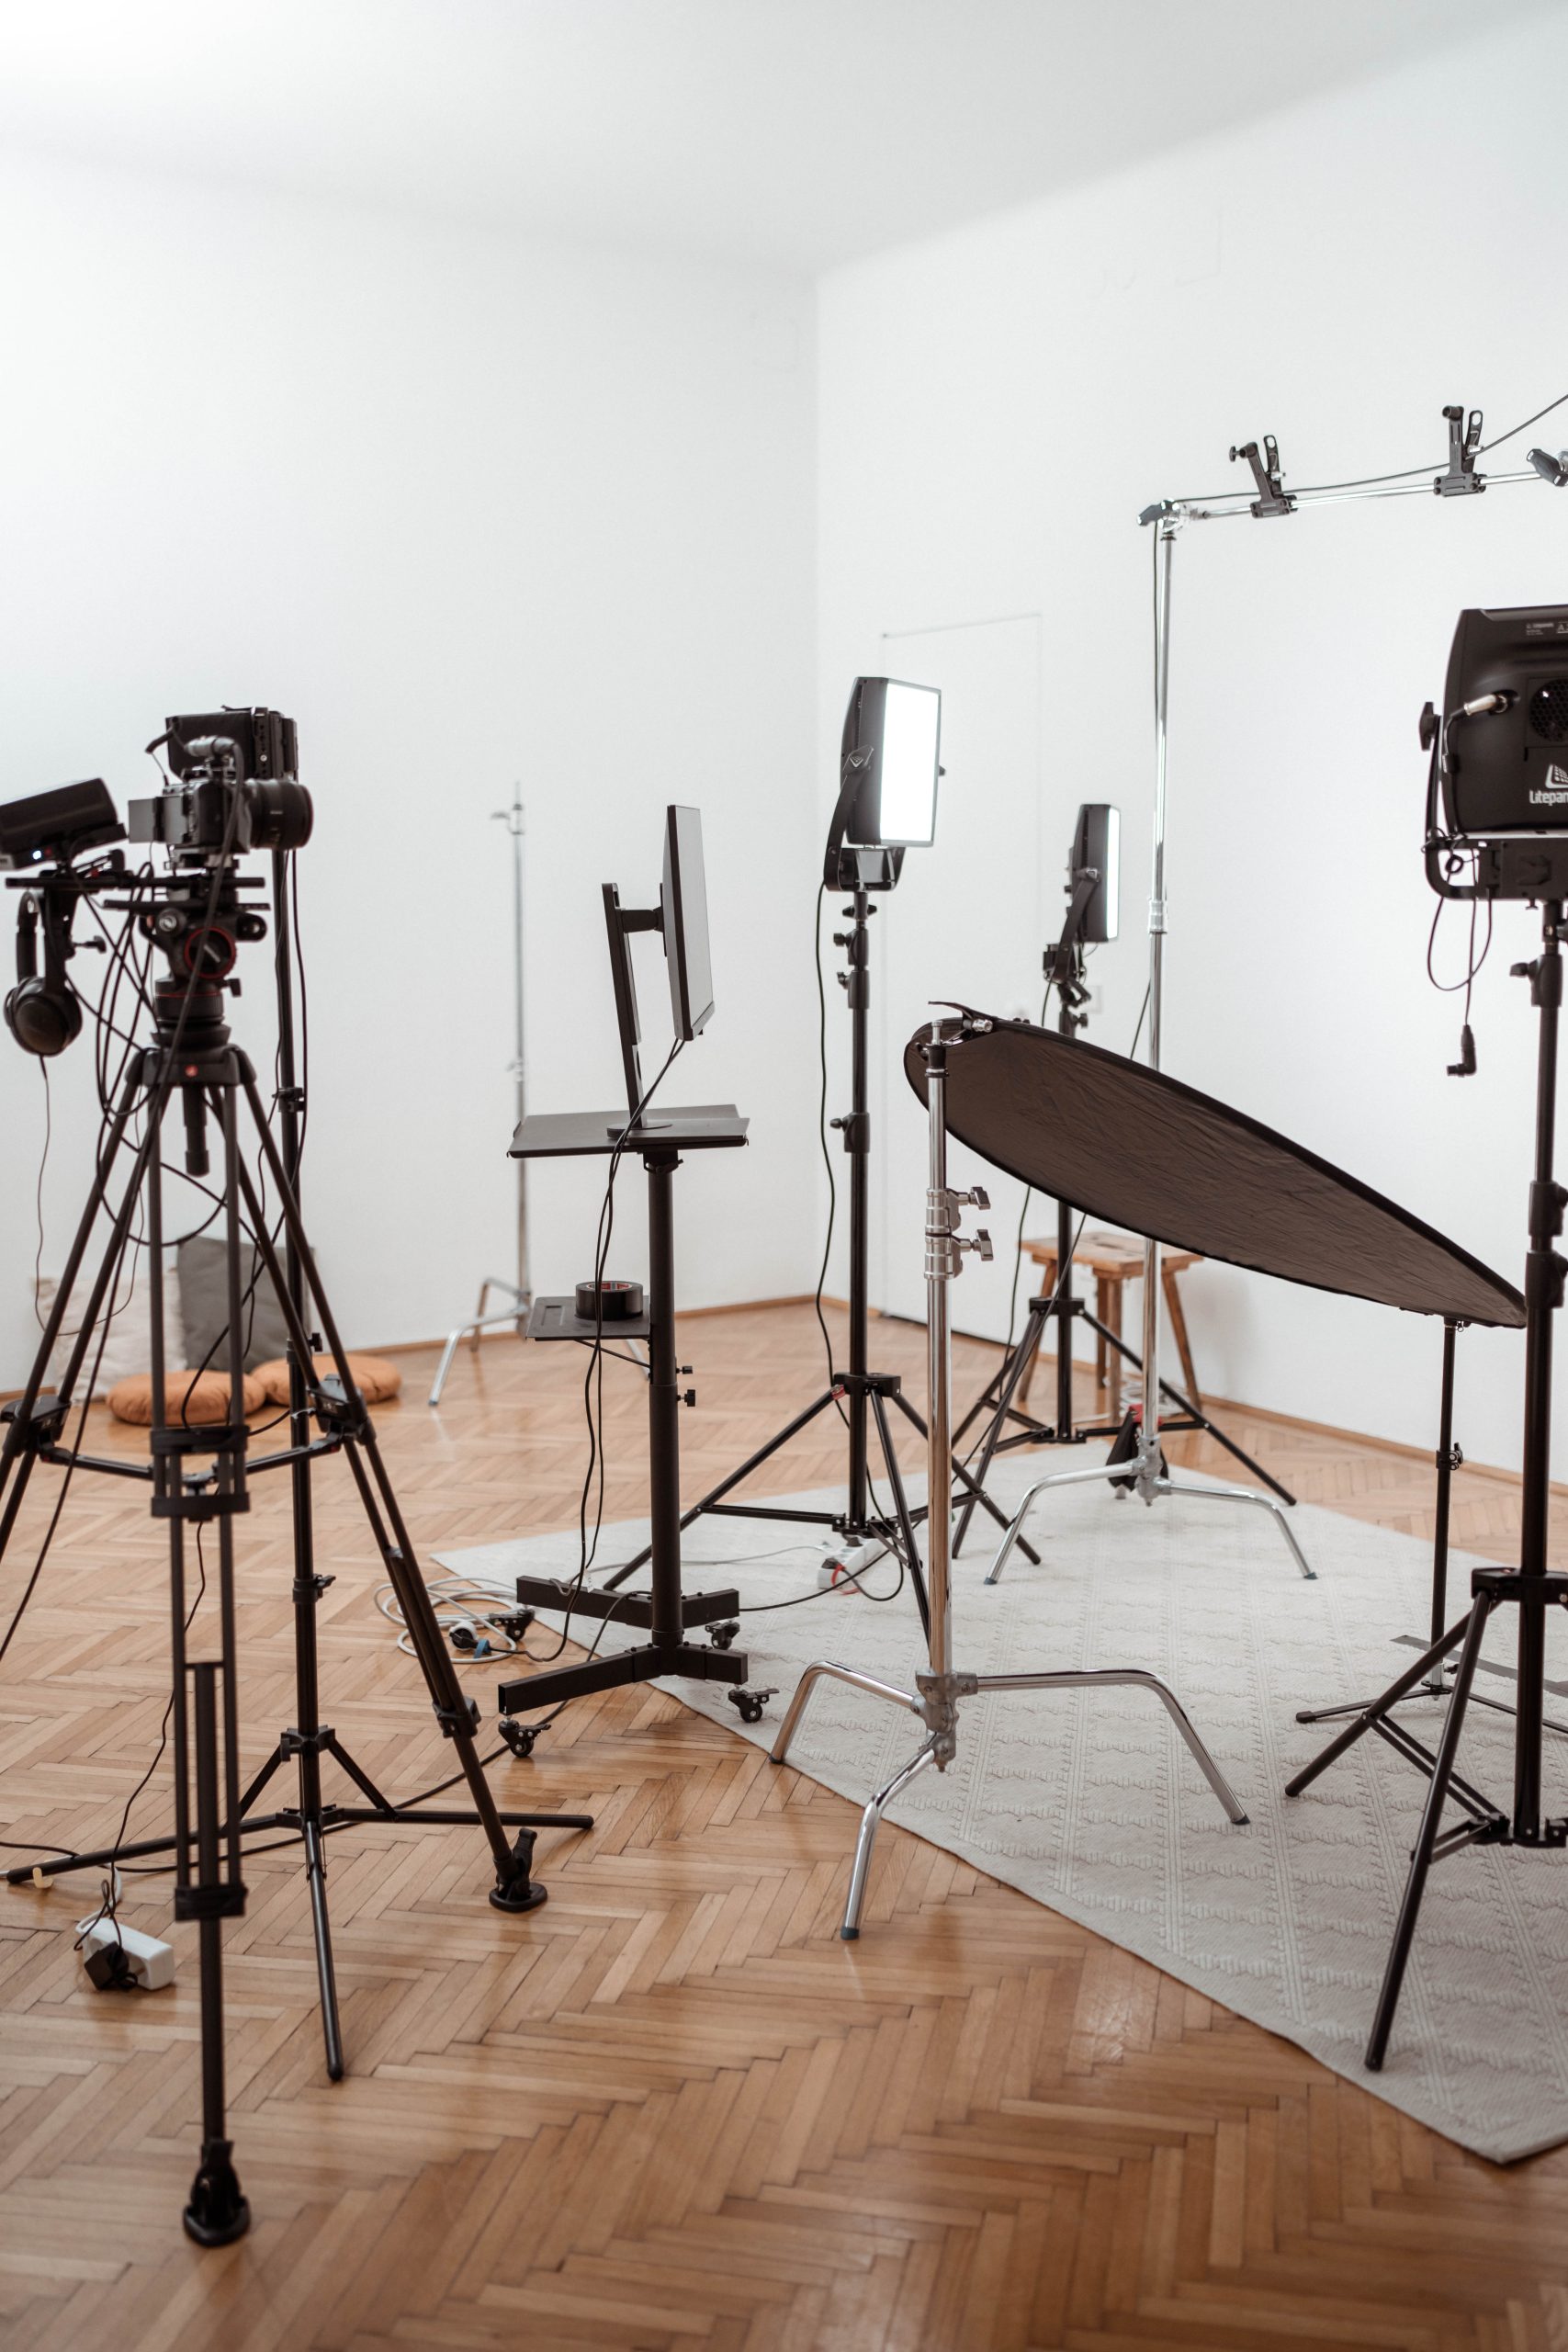 Fotostudio mit professionellem Equipment und aufgebautem Shooting-Setup für hochwertige Aufnahmen.